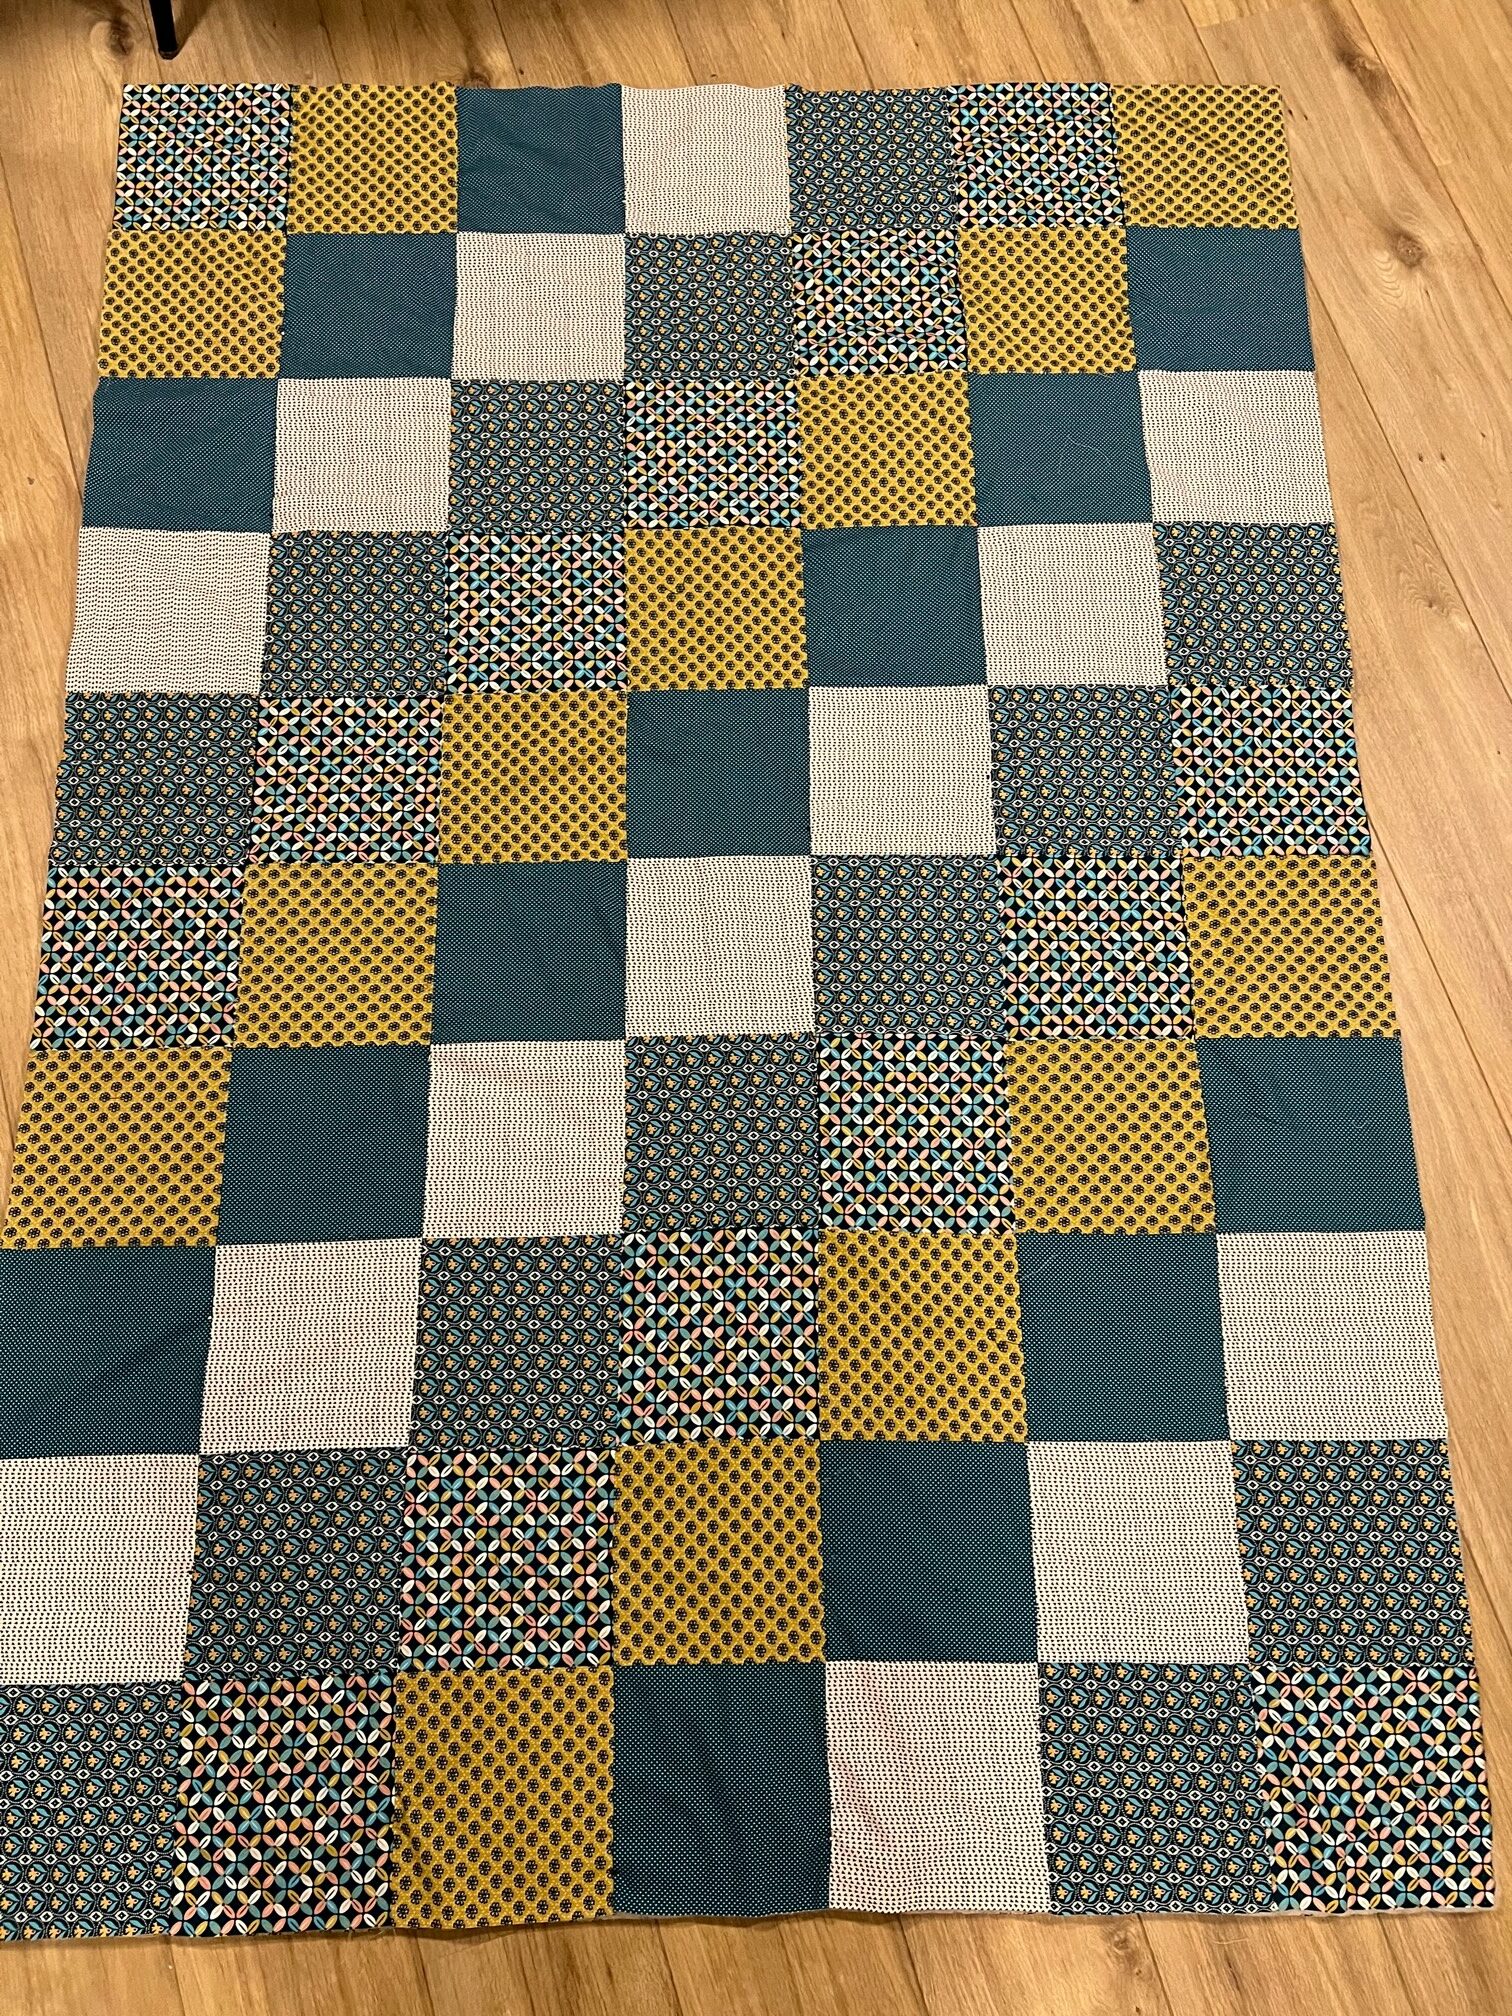 ontwikkelen Kosciuszko verwijzen DIY quilt/patchwork deken | Perfect voor beginners | Budgetstoffen Blog